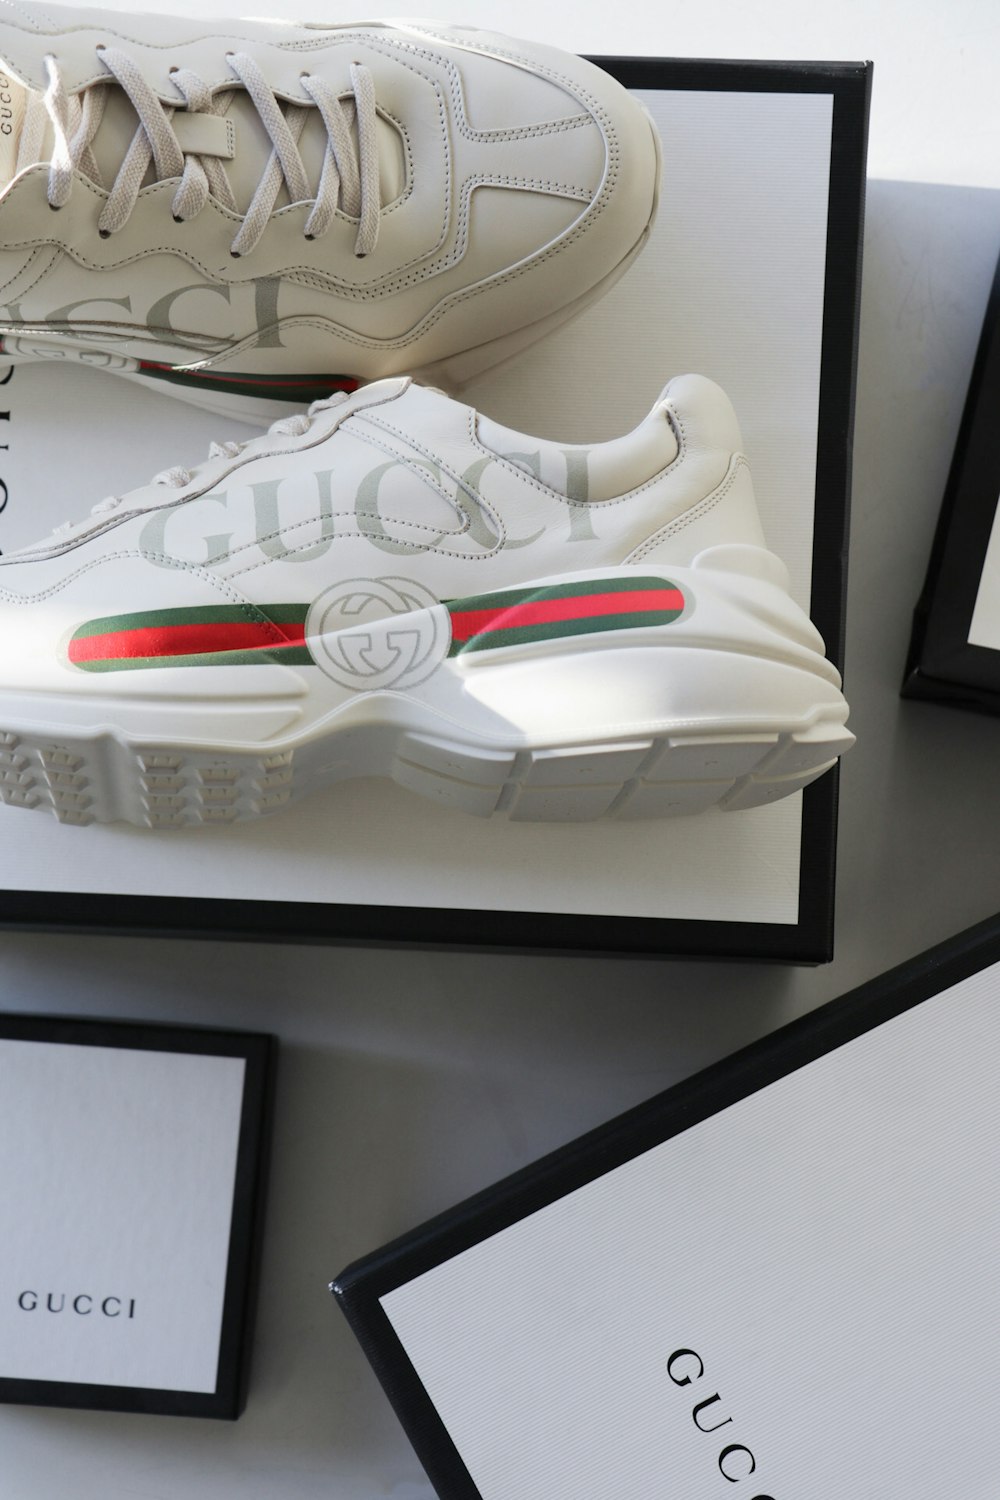 Foto Par de zapatillas Gucci blancas-rojas-verdes con caja – Imagen  Bellevue gratis en Unsplash